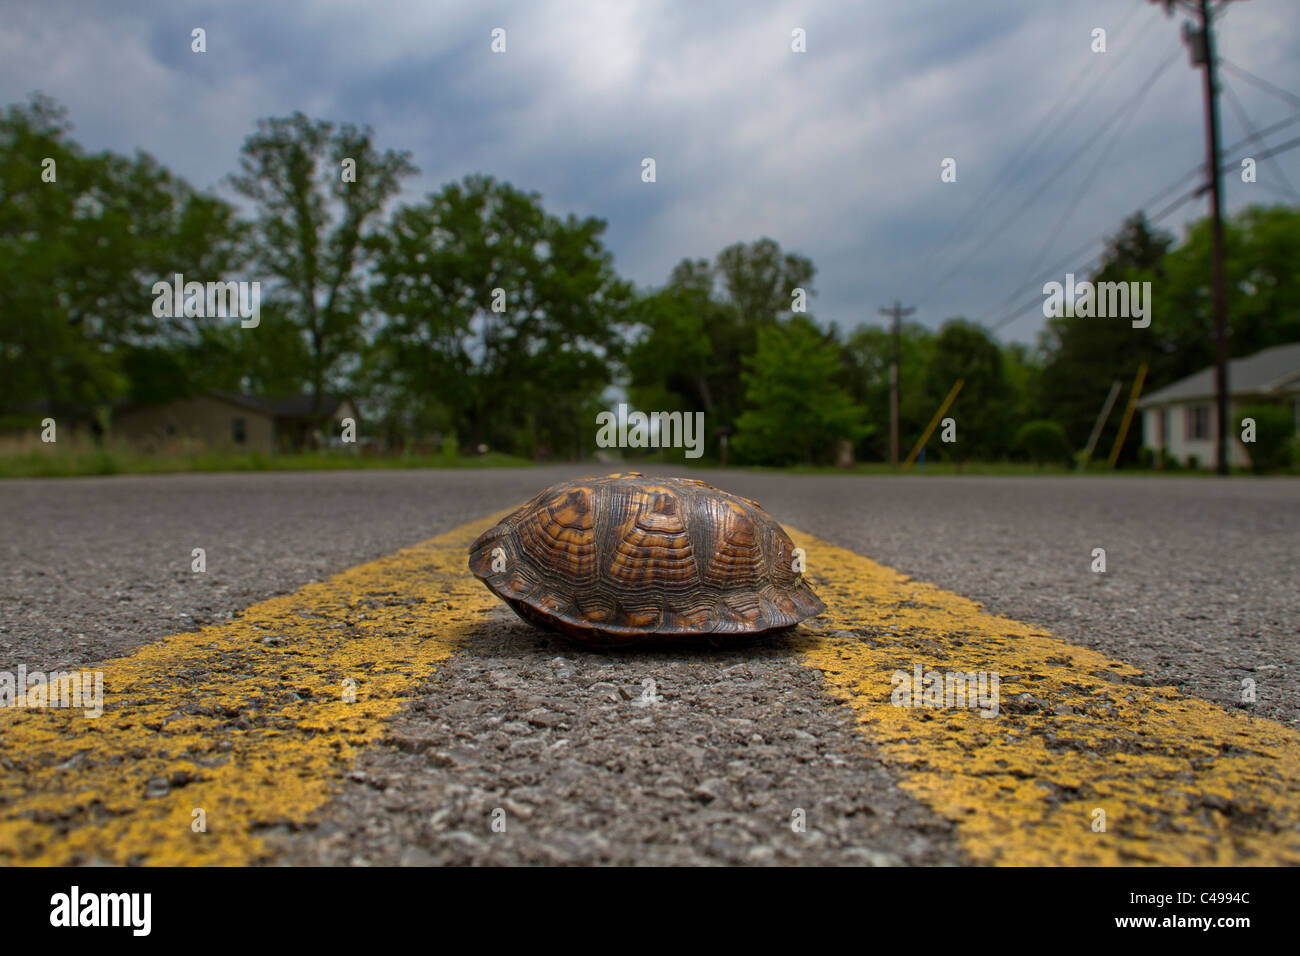 Une tortue boîte traversant une route rurale Banque D'Images